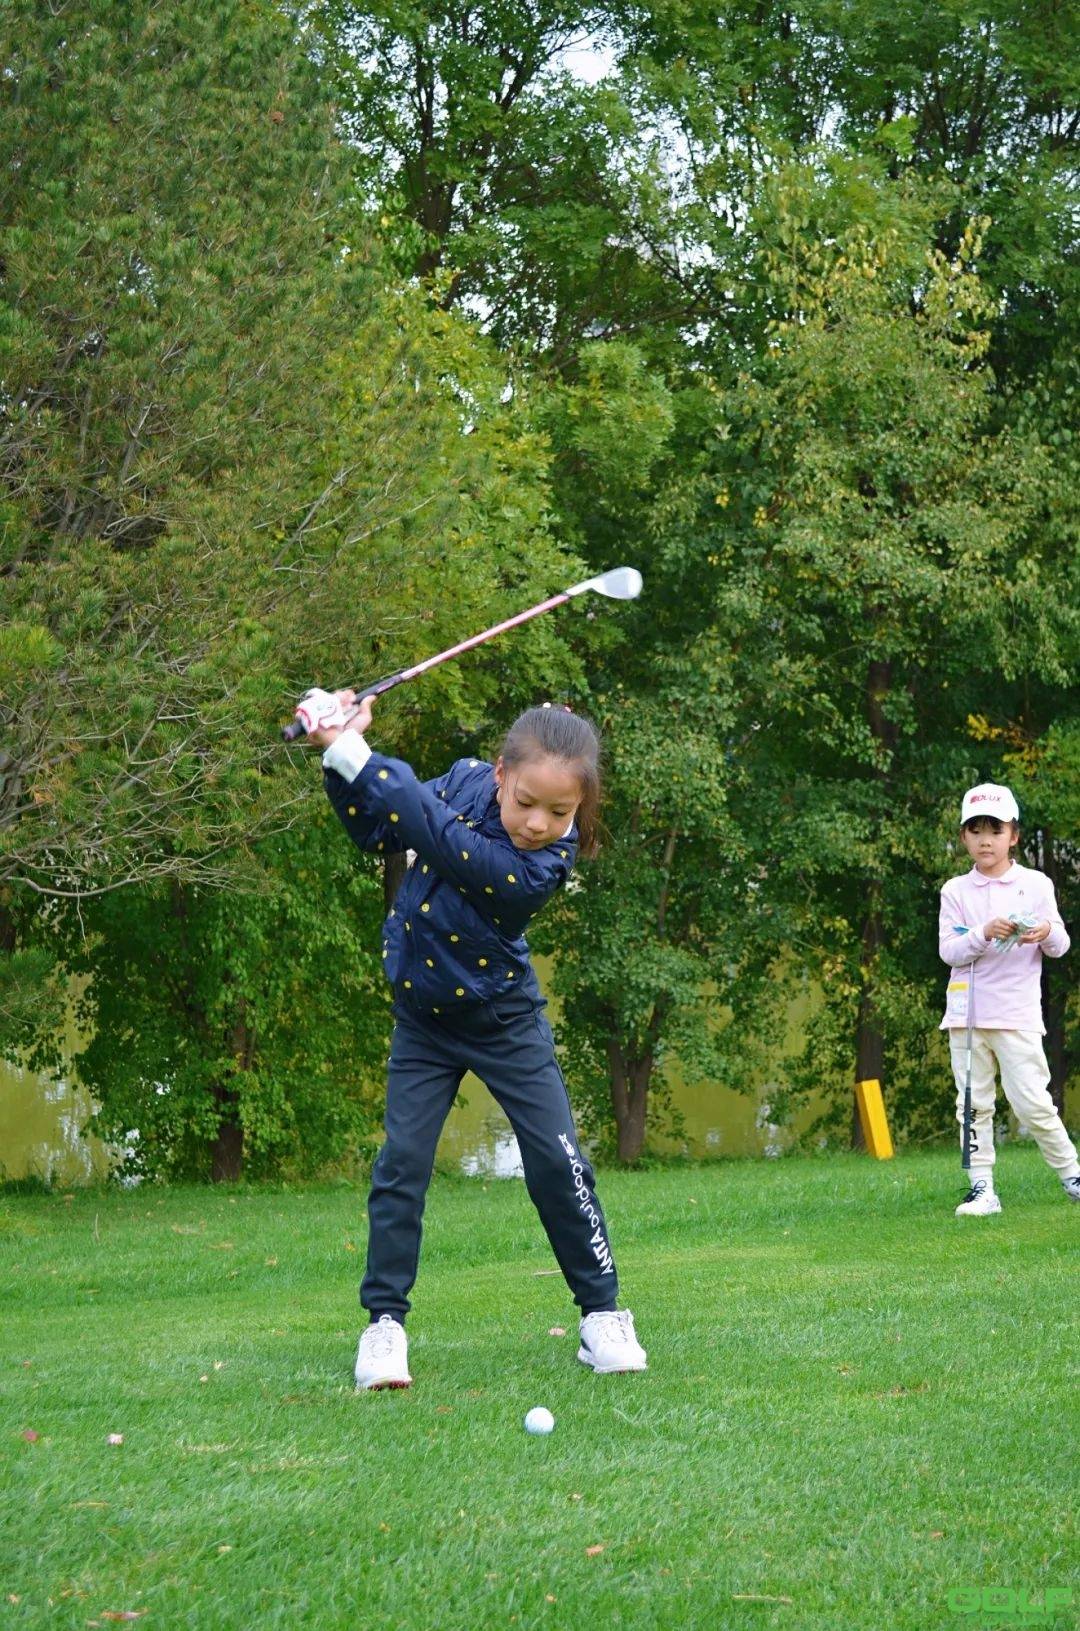 “2020·山西省青少年高尔夫球锦标赛"圆满收杆